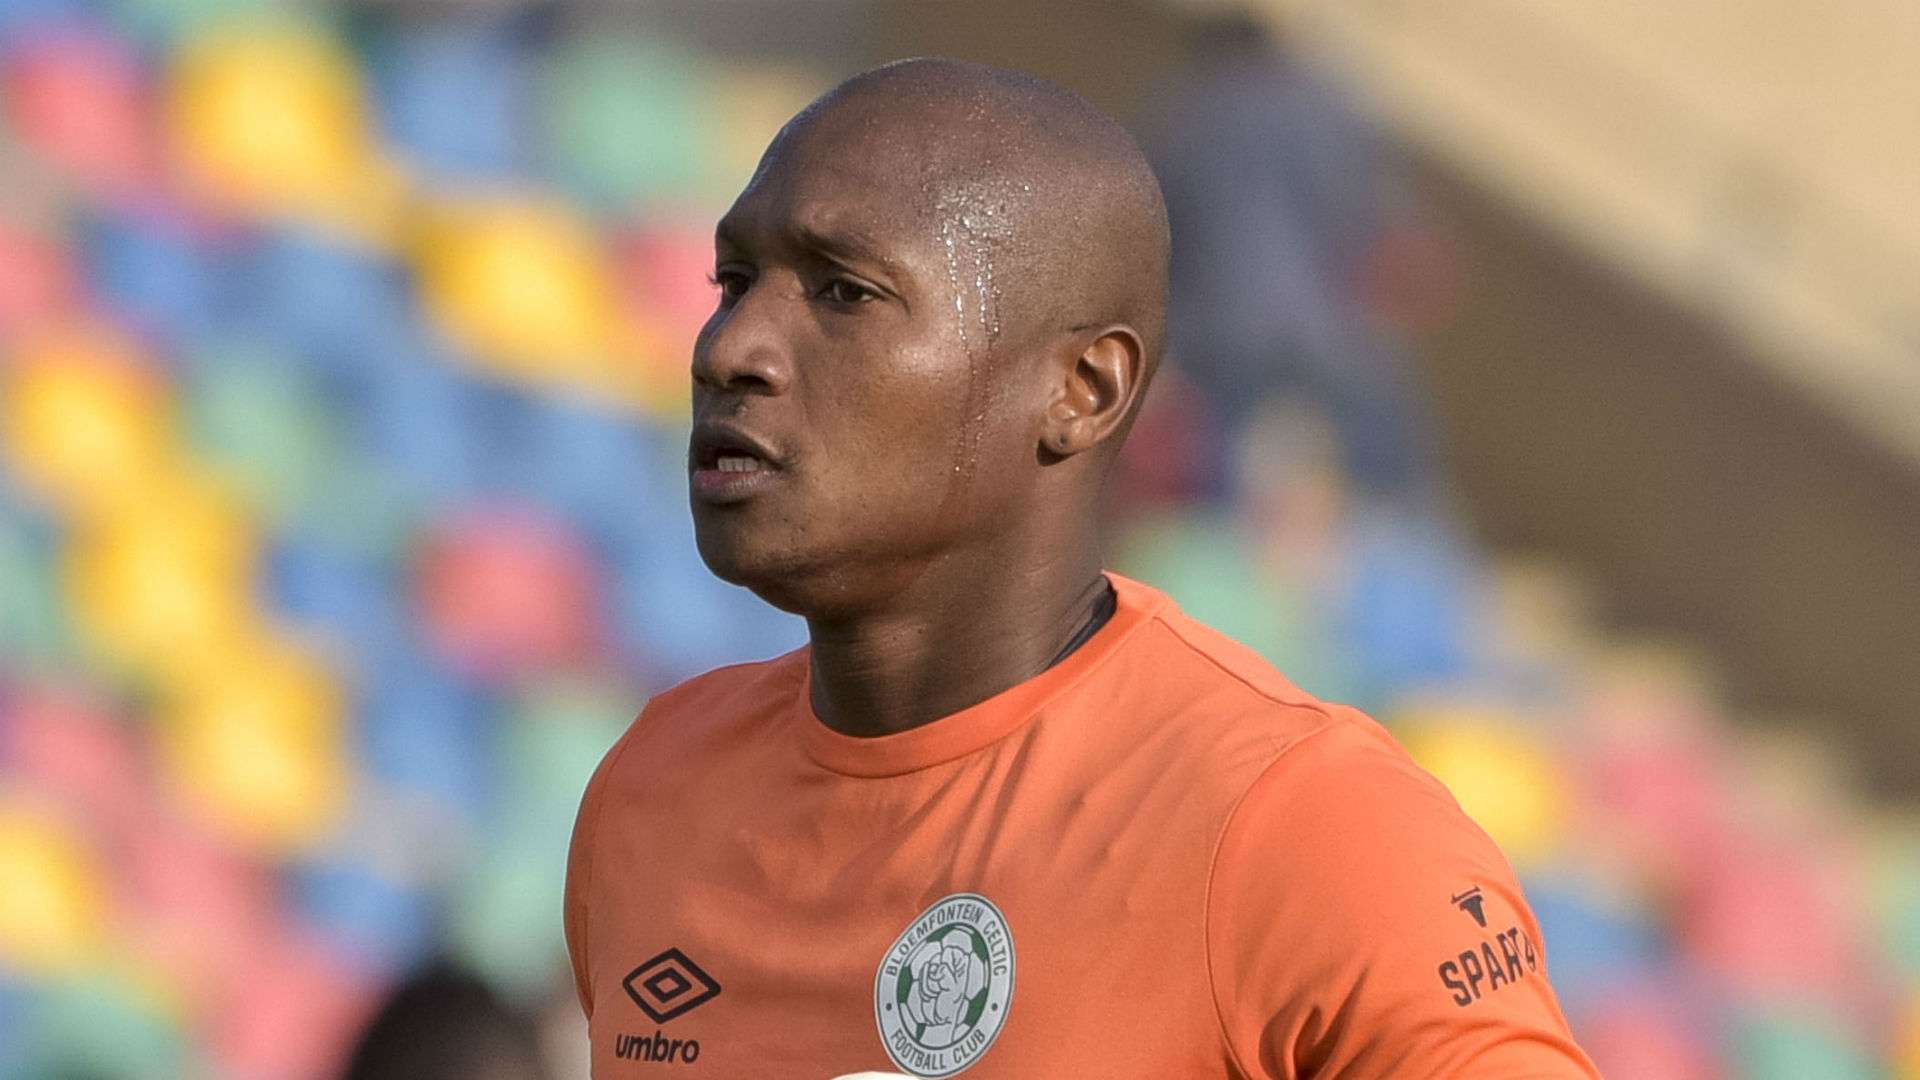 Jackson Mabokgwane of Bloemfontein Celtic, August 2019